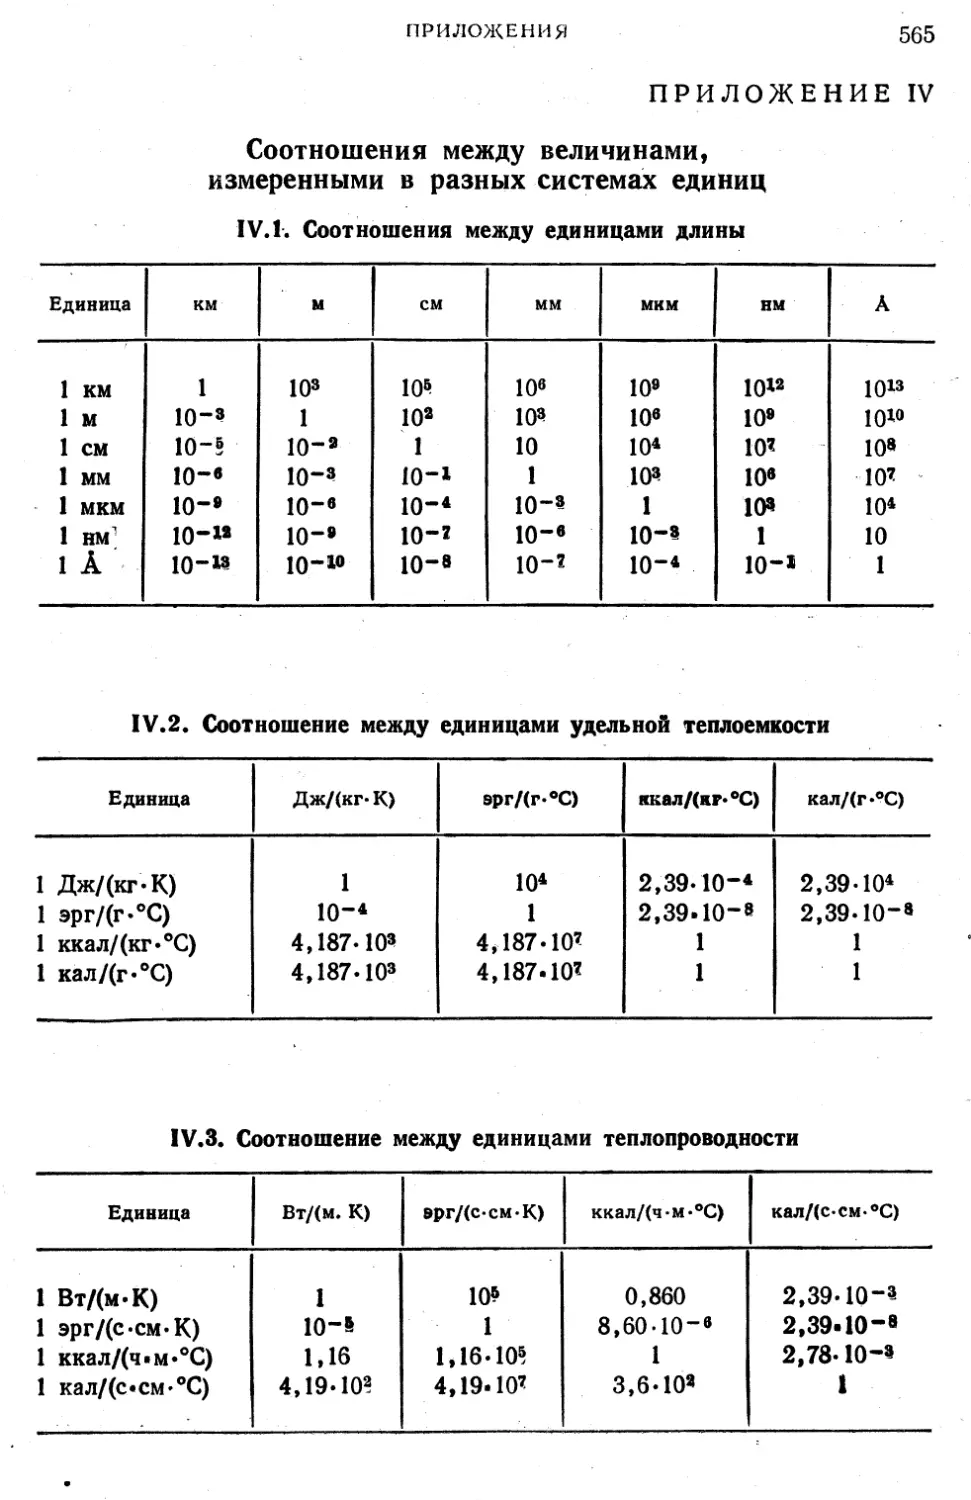 IV. Соотношения между величинами, измеренными в разных системах единиц
IV.2. Соотношение между единицами удельной теплоемкости
IV.3. Соотношение между единицами теплопроводности